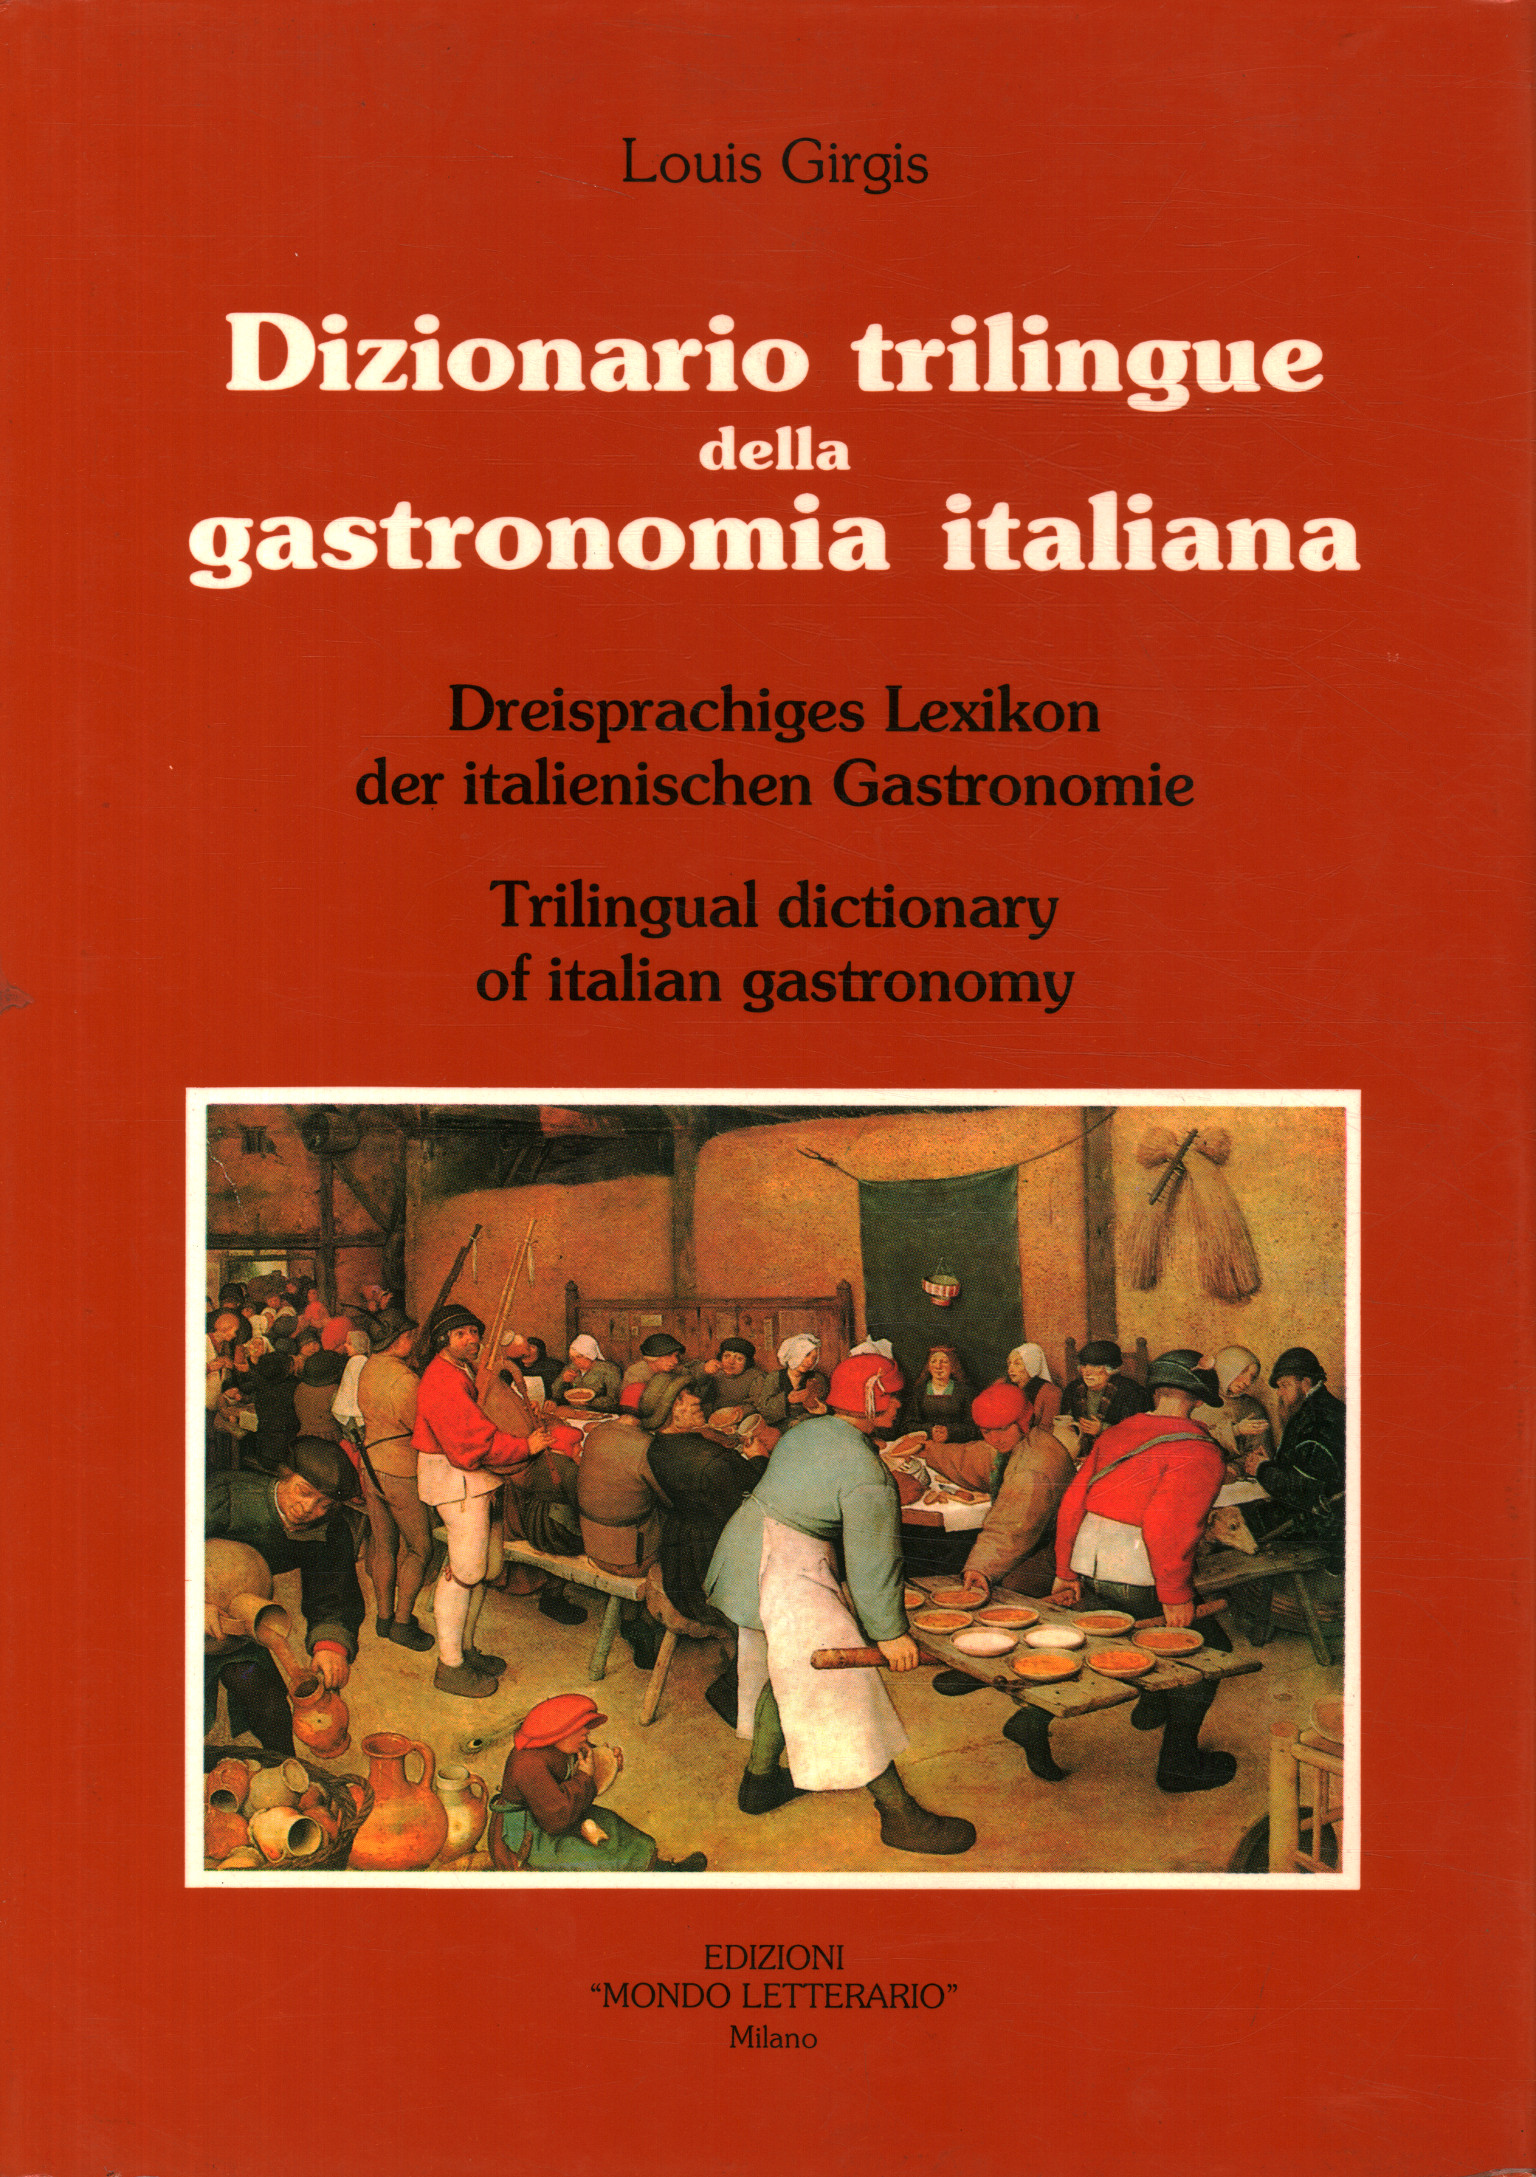 Dreisprachiges Wörterbuch der italienischen Gastronomie